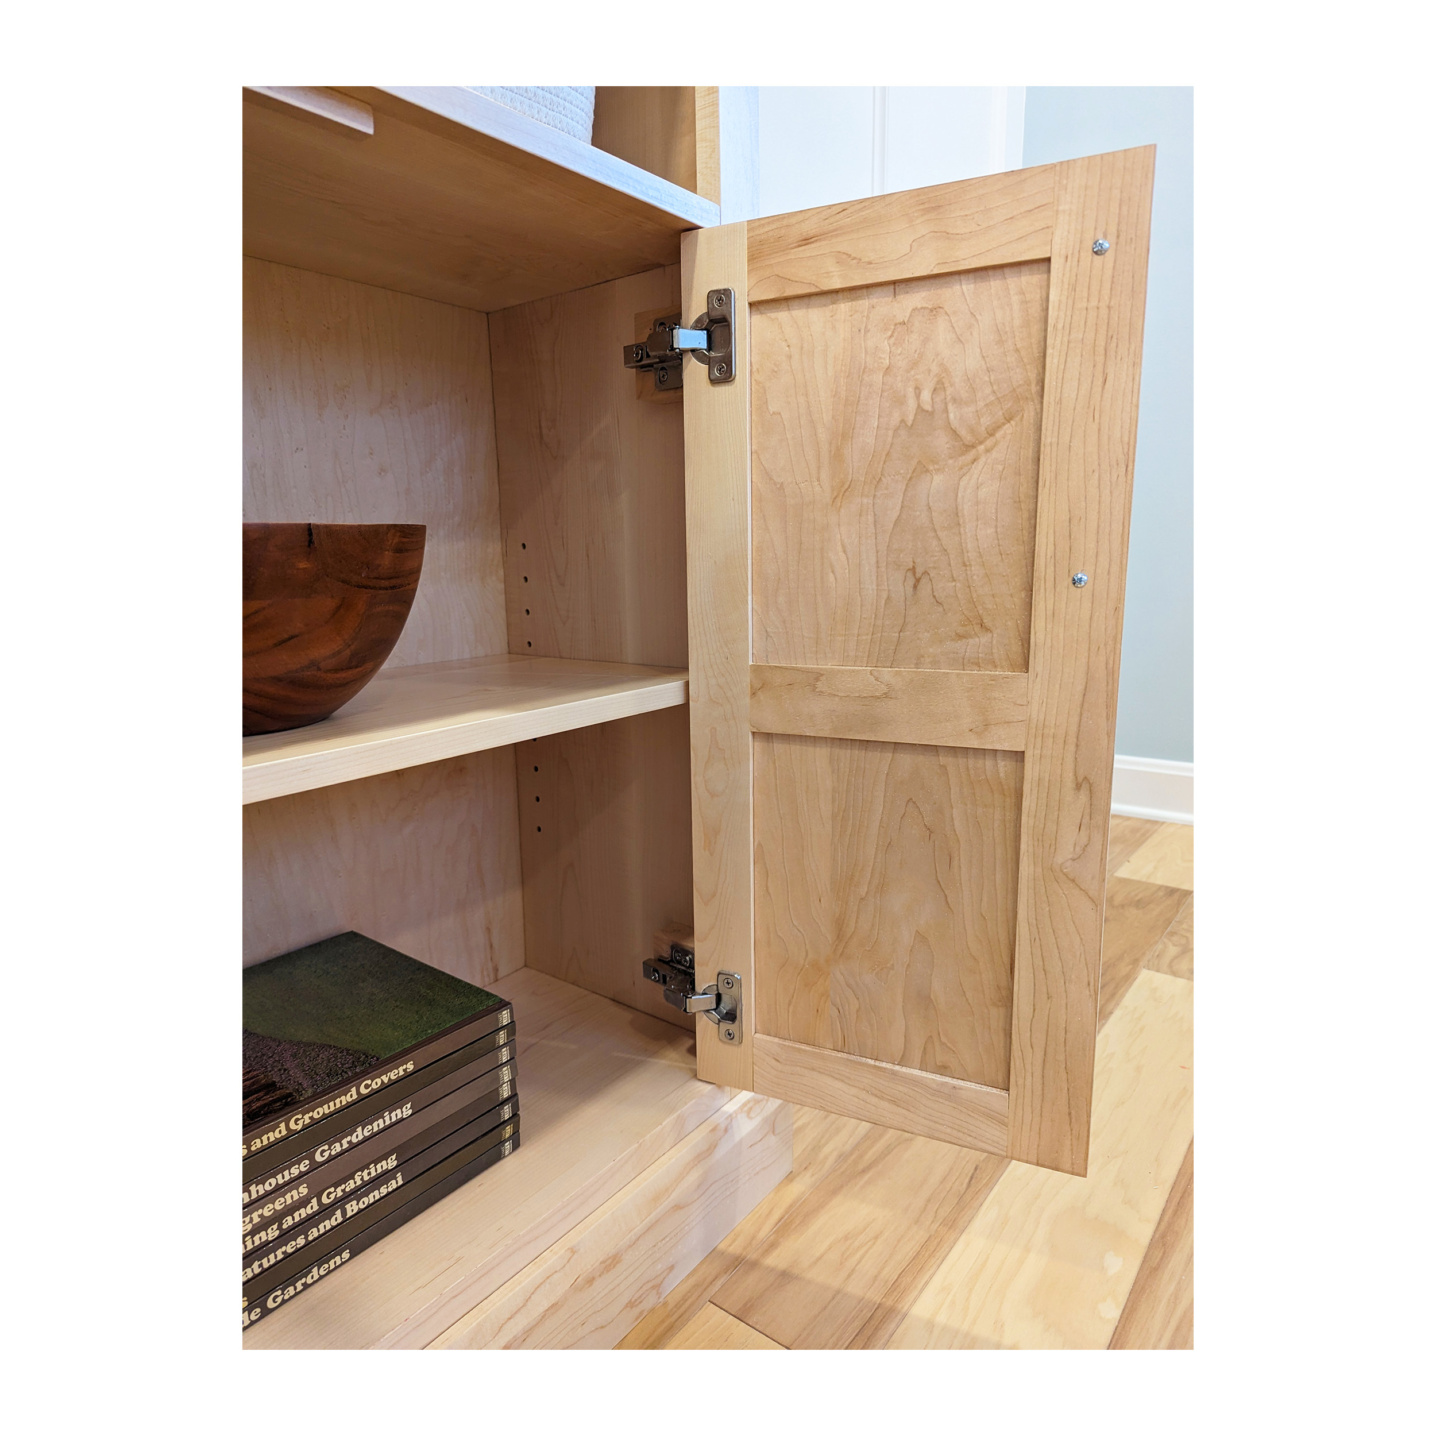 Solid wood bookshelf doors